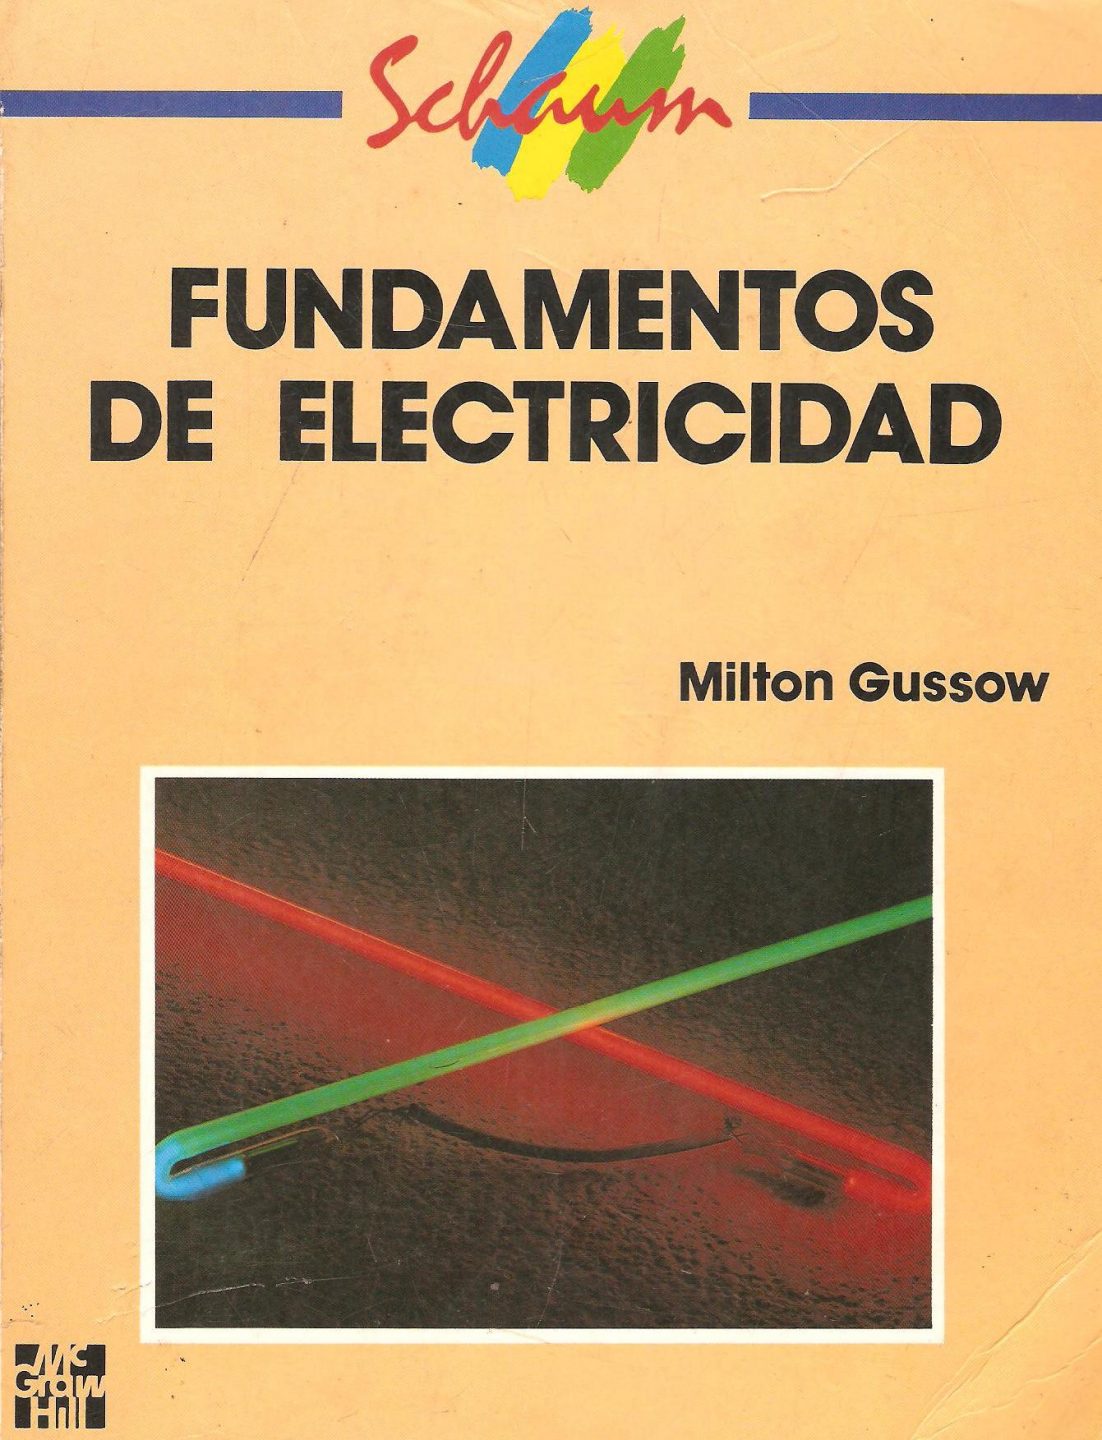 Fundamentos de Electricidad (Schaum) 1 Edición Milton Gussow PDF